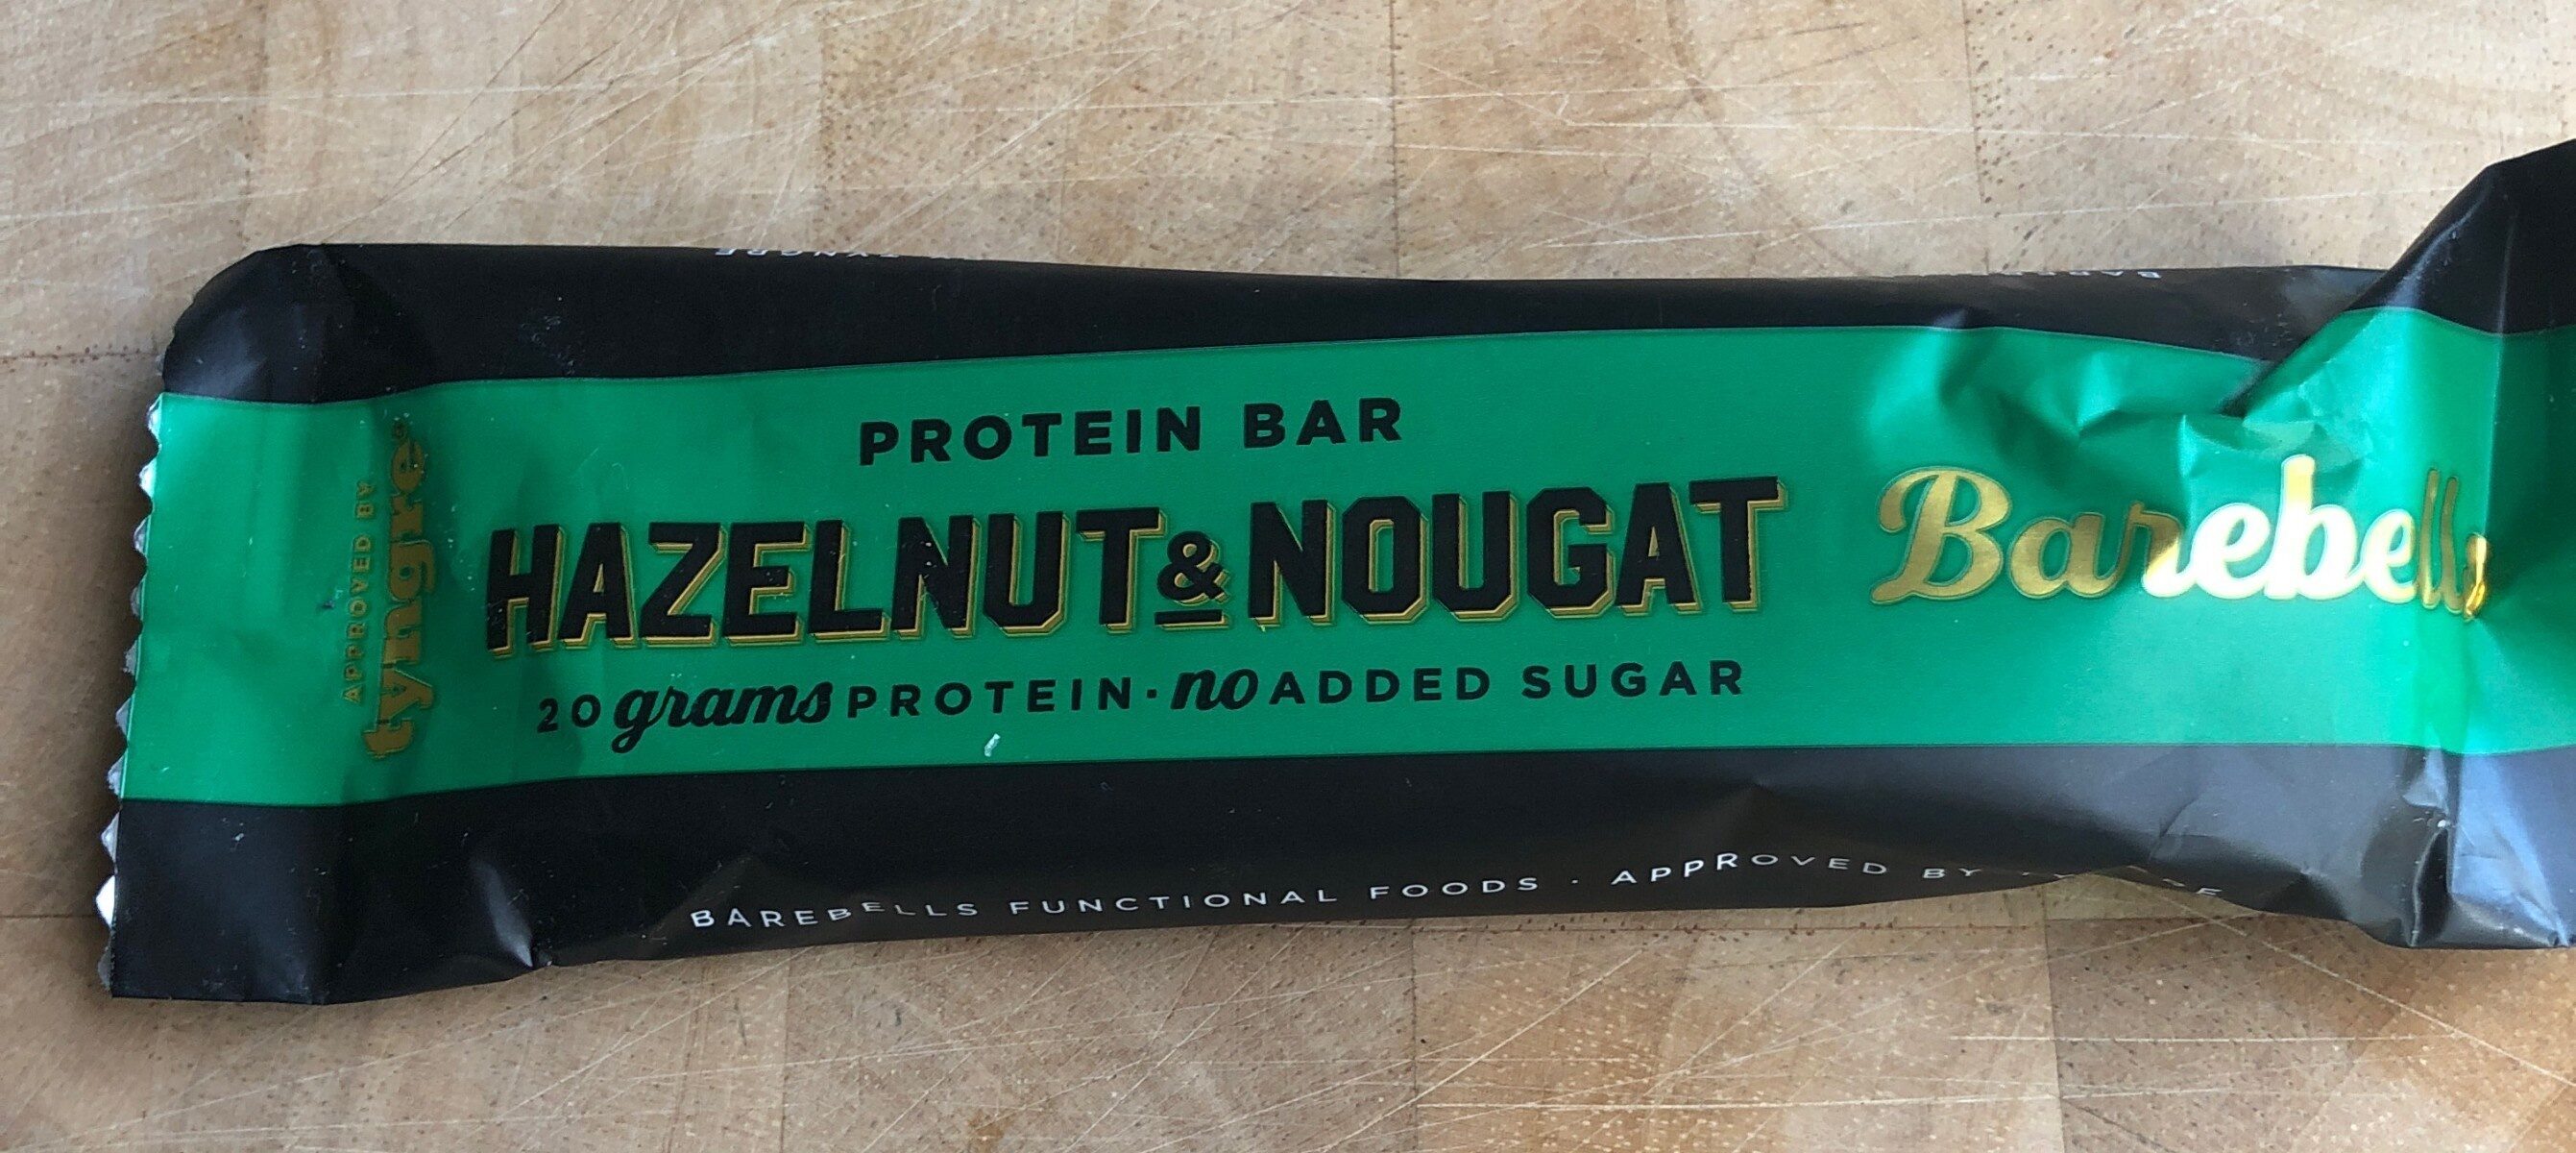 Barre proteine halzelnut nougat - Produkt